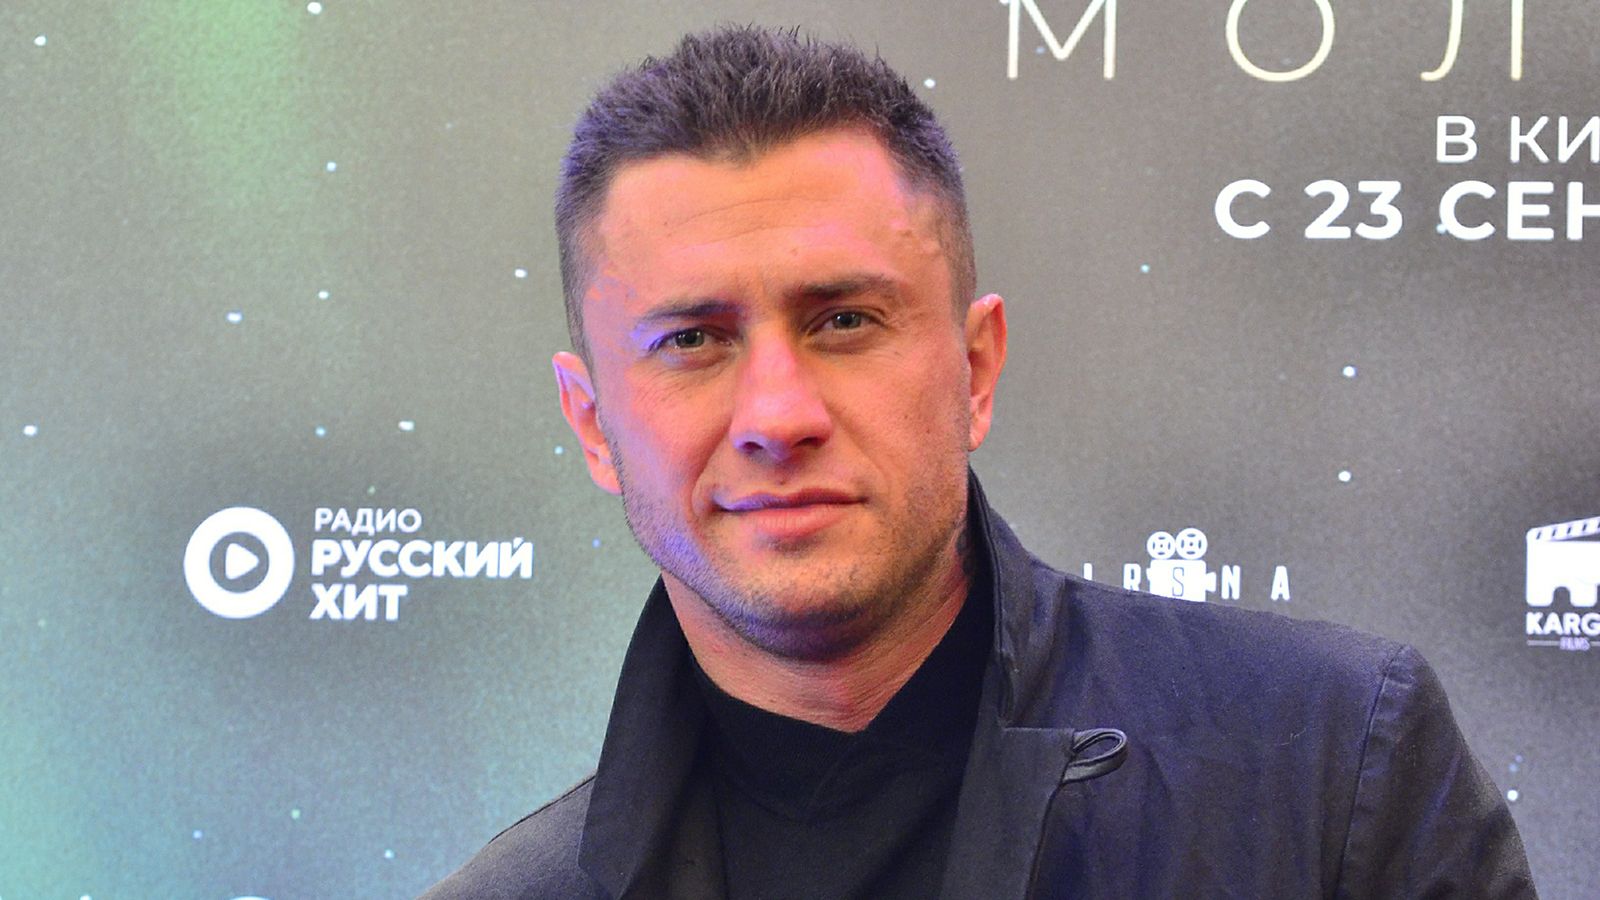 Актер Павел Прилучный объяснил спешку при заключении брака с Зепюр Брутян Общество